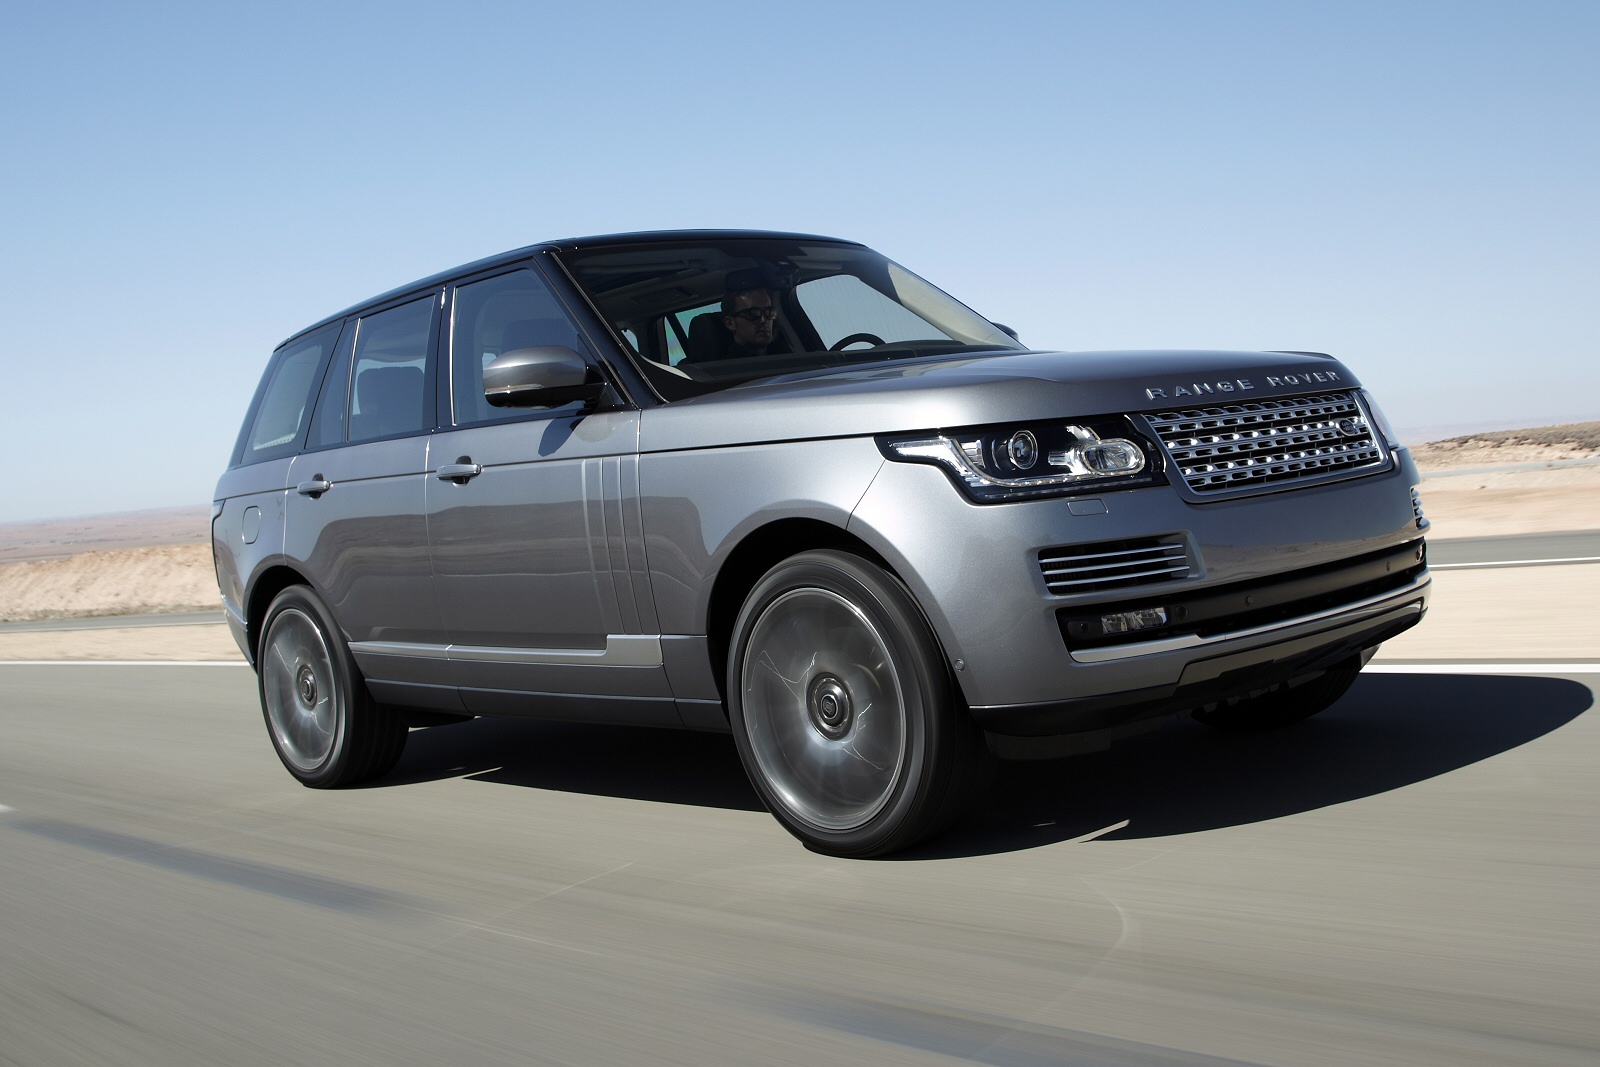 2014 Range Rover